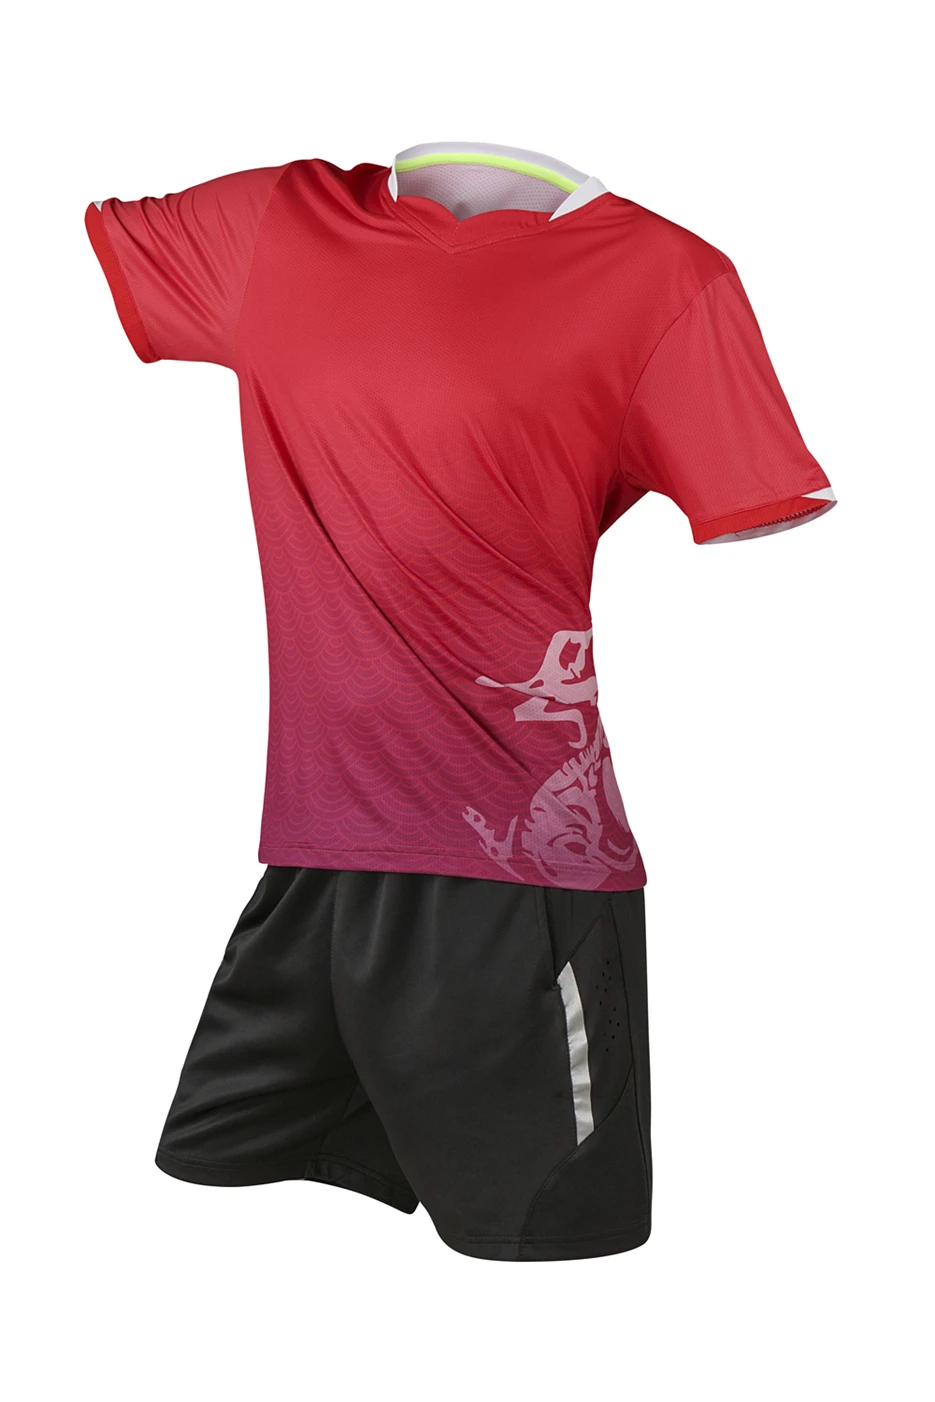 Печать название Китай Дракон Настольный теннис Наборы для мужчин/женщин, пинг понг одежда набор, сухой-Прохладный Настольный теннис одежда 212A